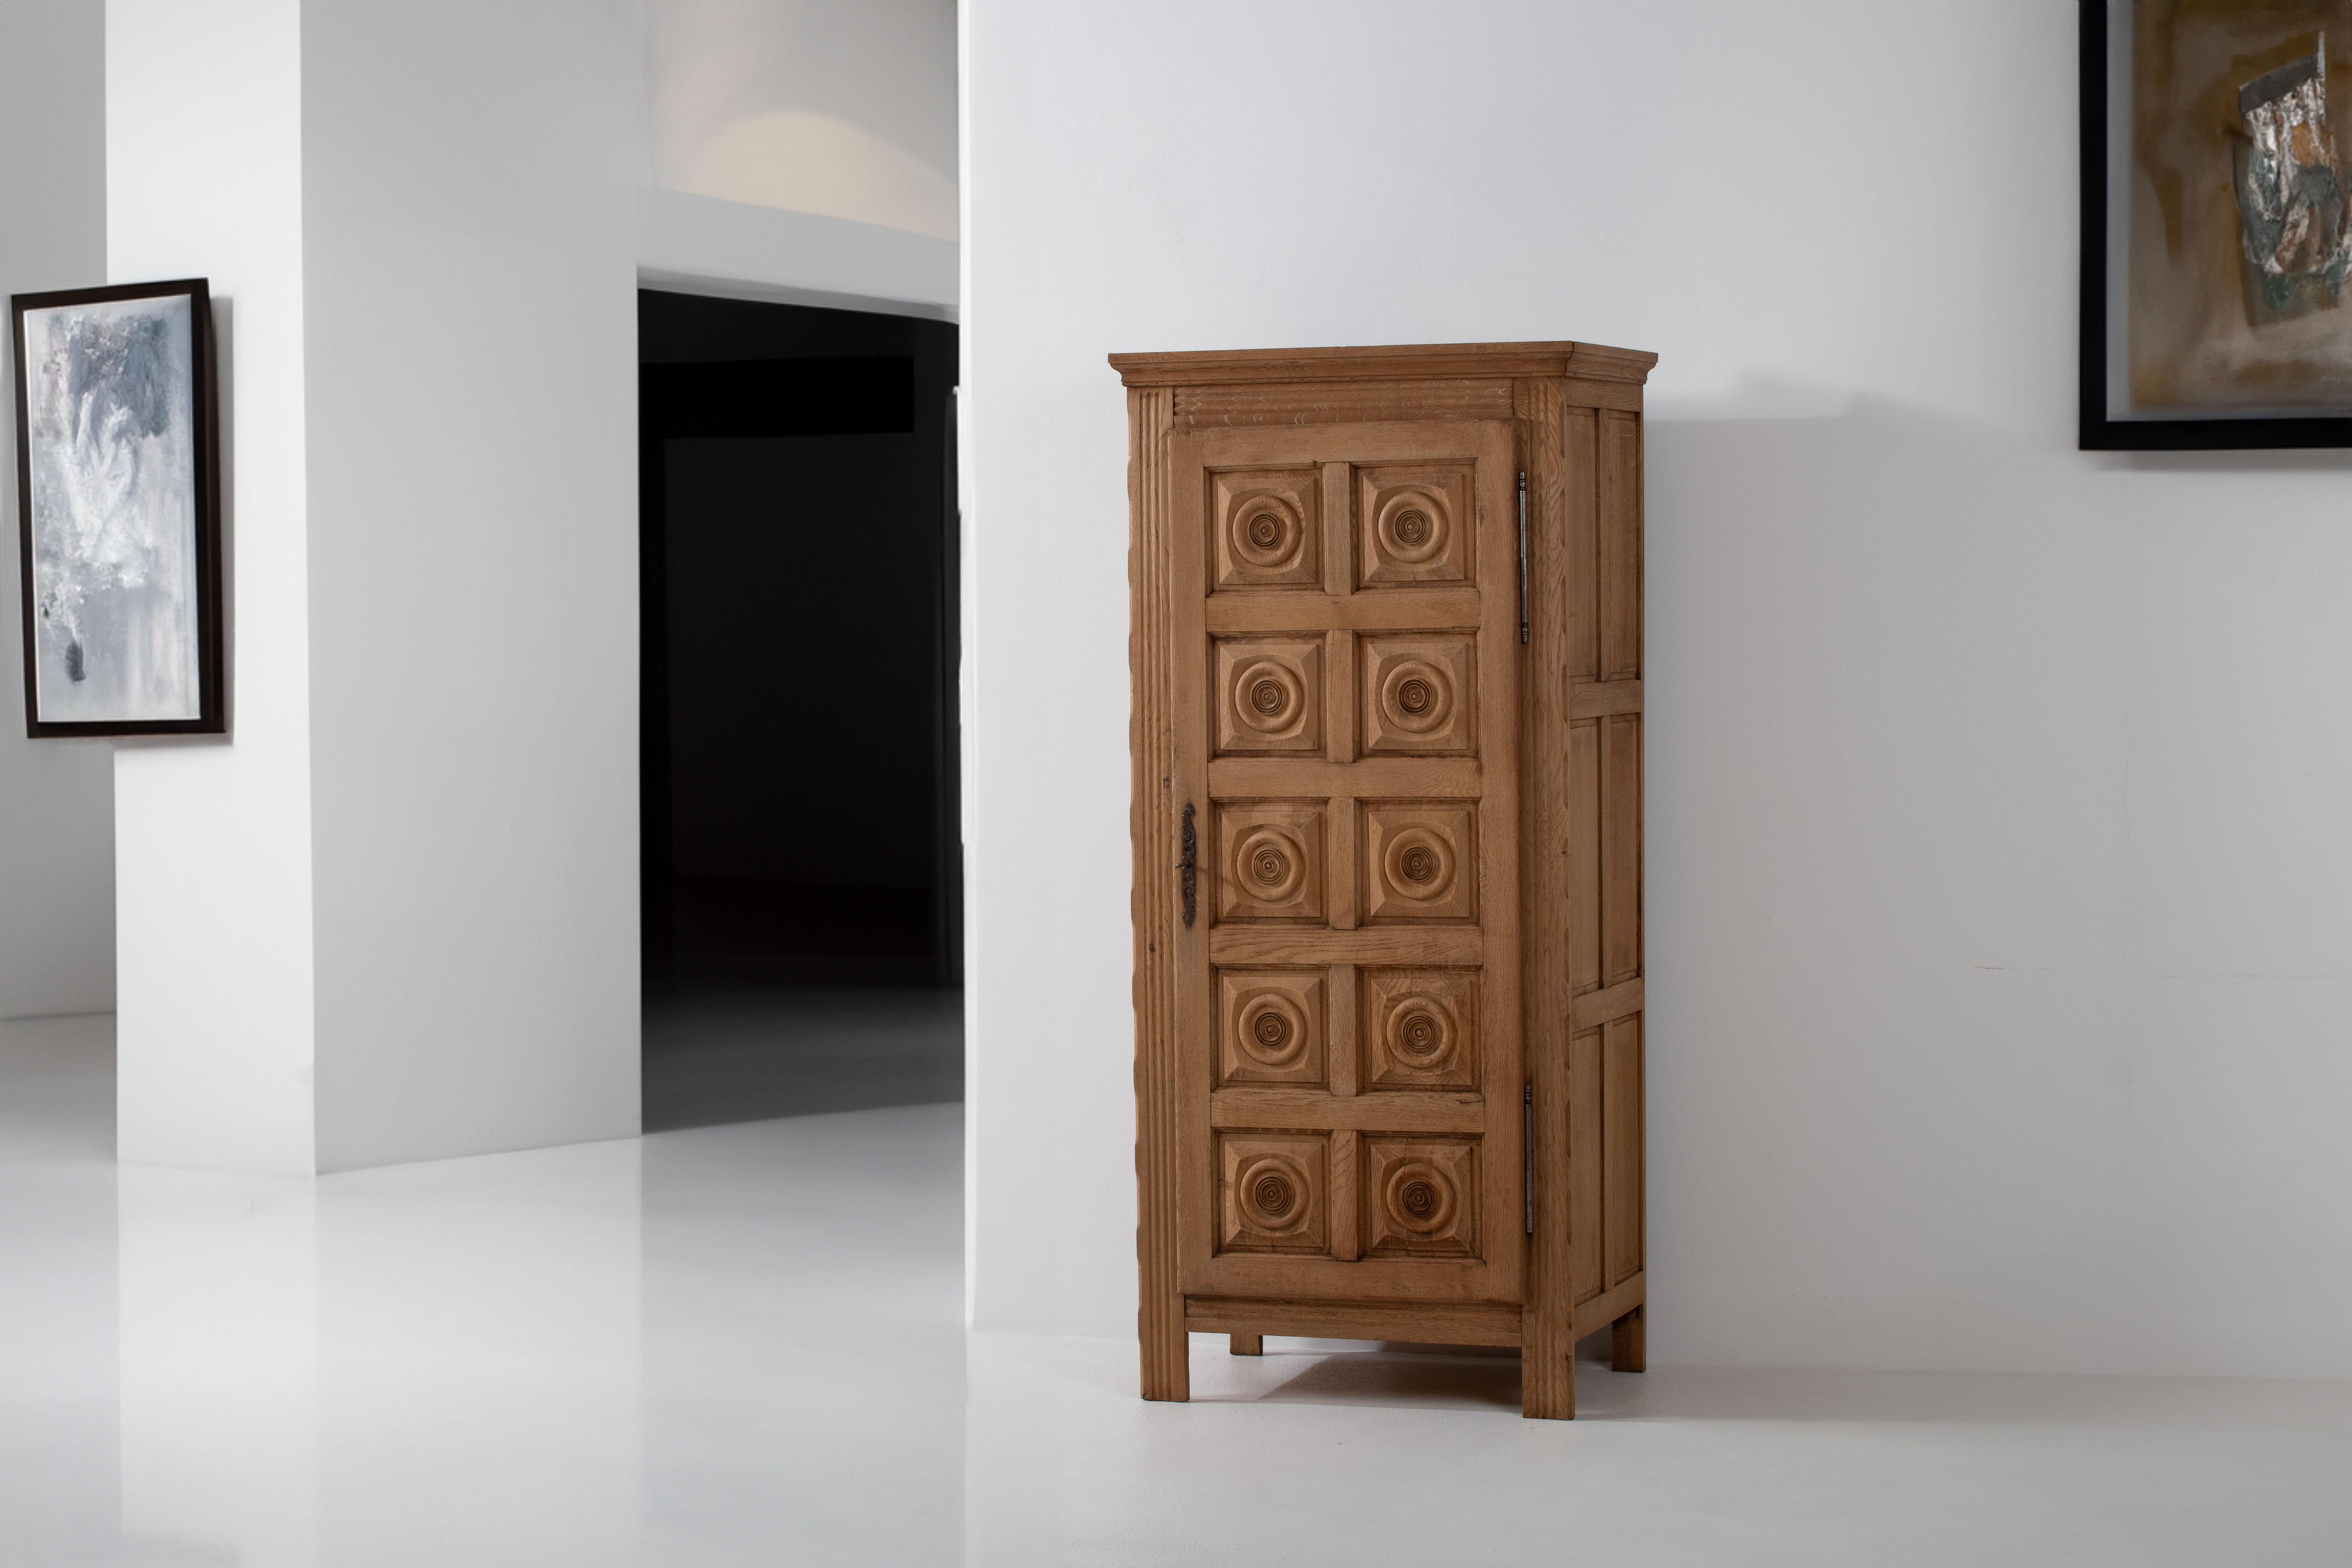 Nous vous présentons une magnifique armoire en chêne, qui rend hommage au style emblématique de Charles Dudouyt, figure emblématique du mobilier français. Cette pièce date des années 1950 et incarne le charme durable de l'artisanat français du